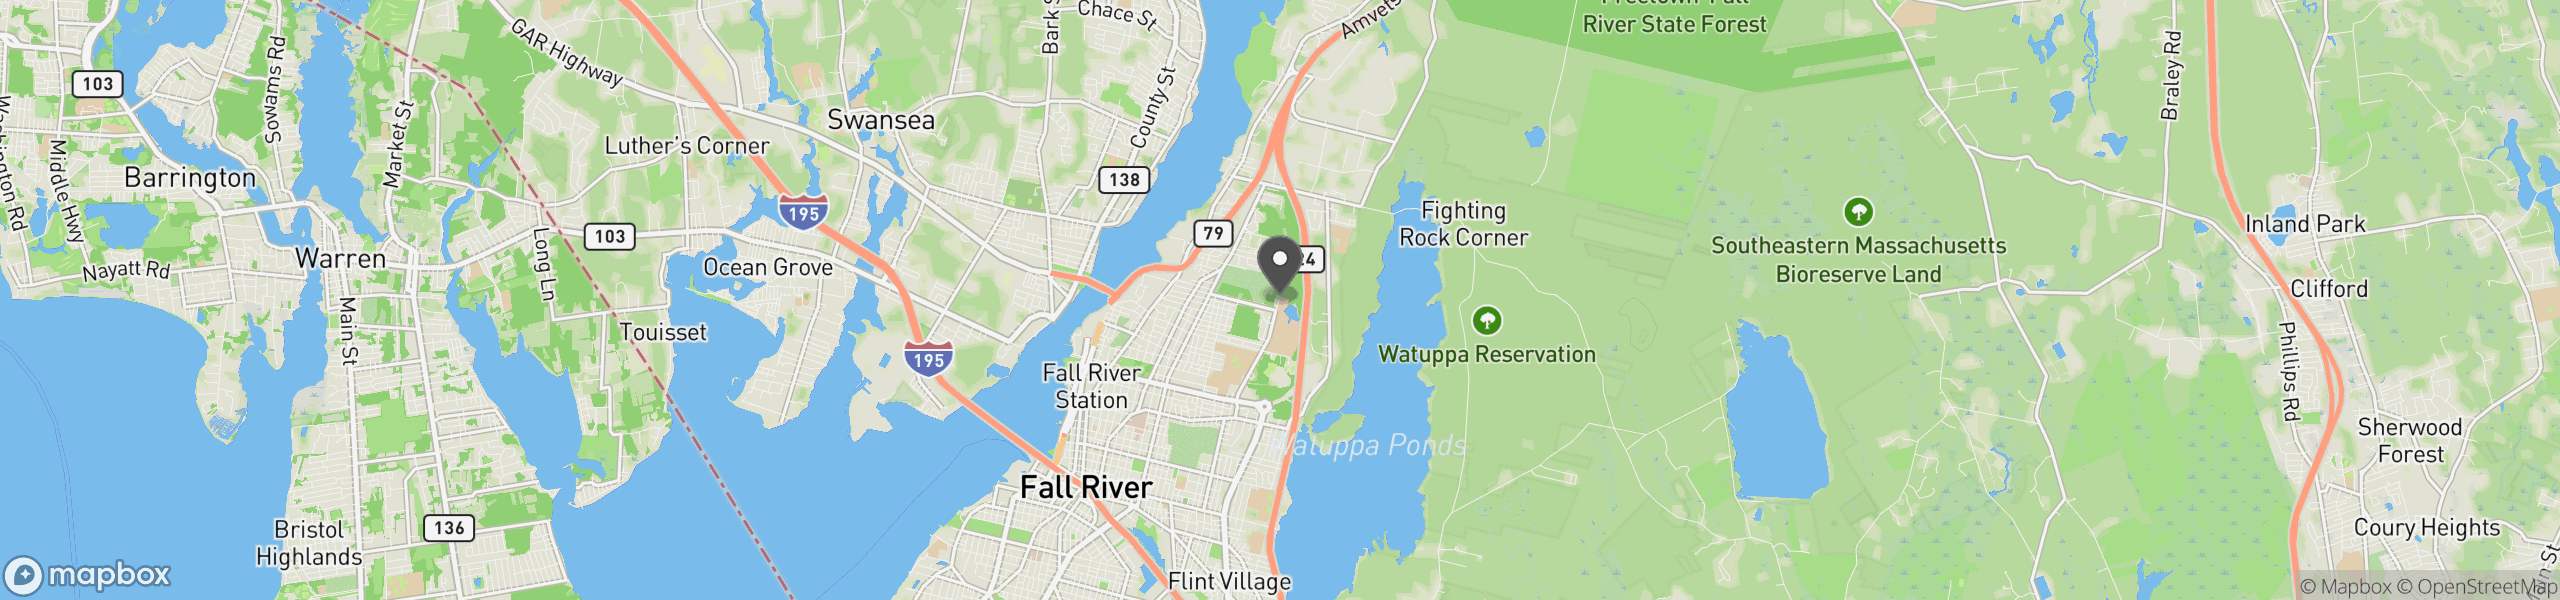 Fall River, MA 02720